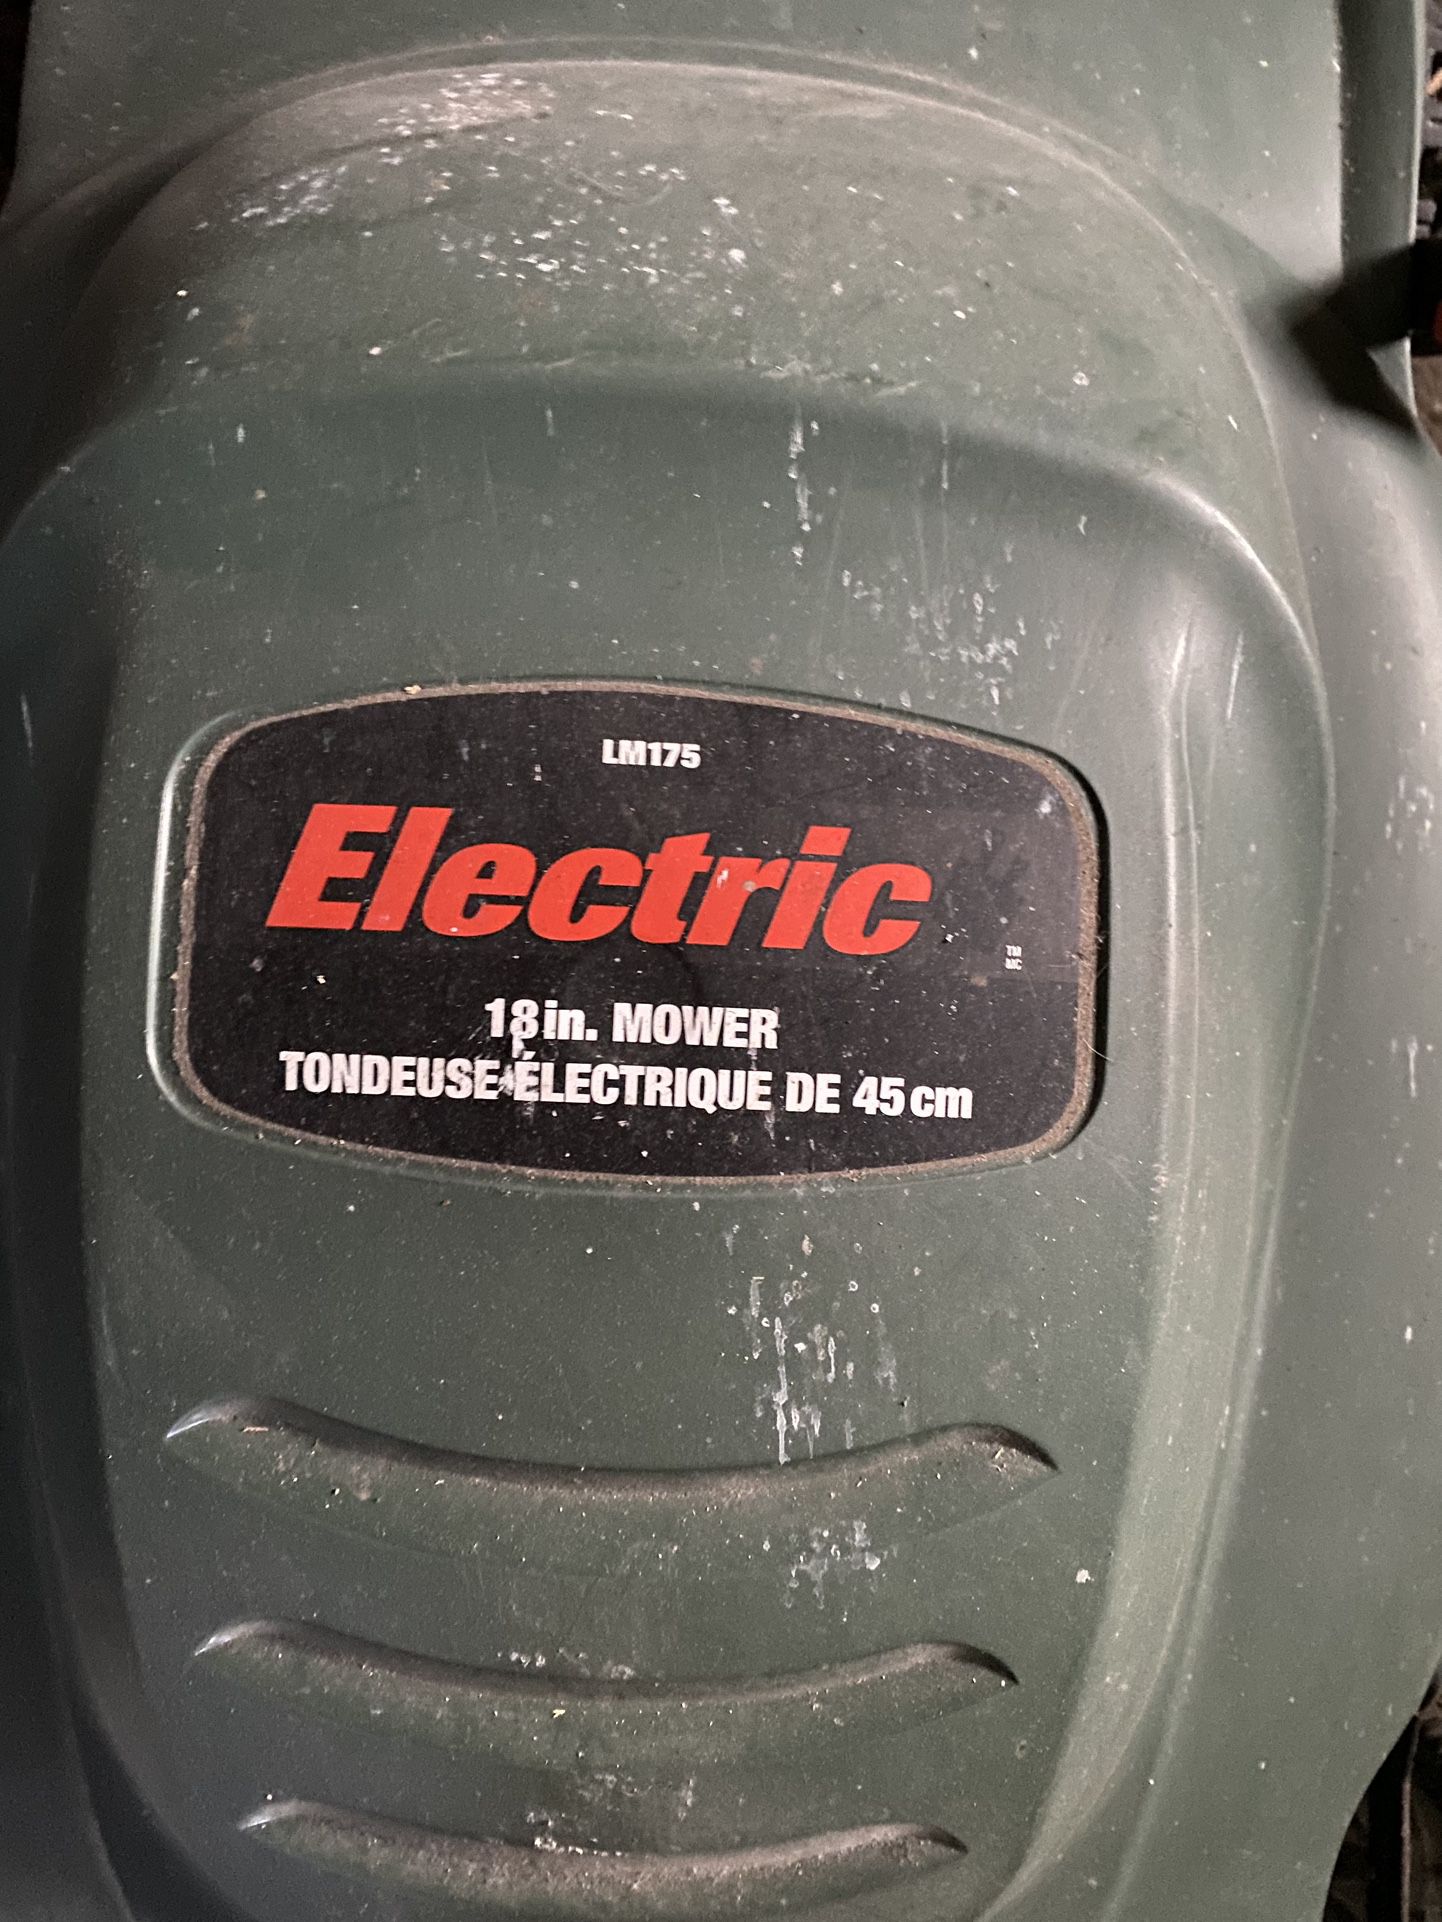 Black & Decker Electric Lawn Mower for Sale in Swampscott, MA